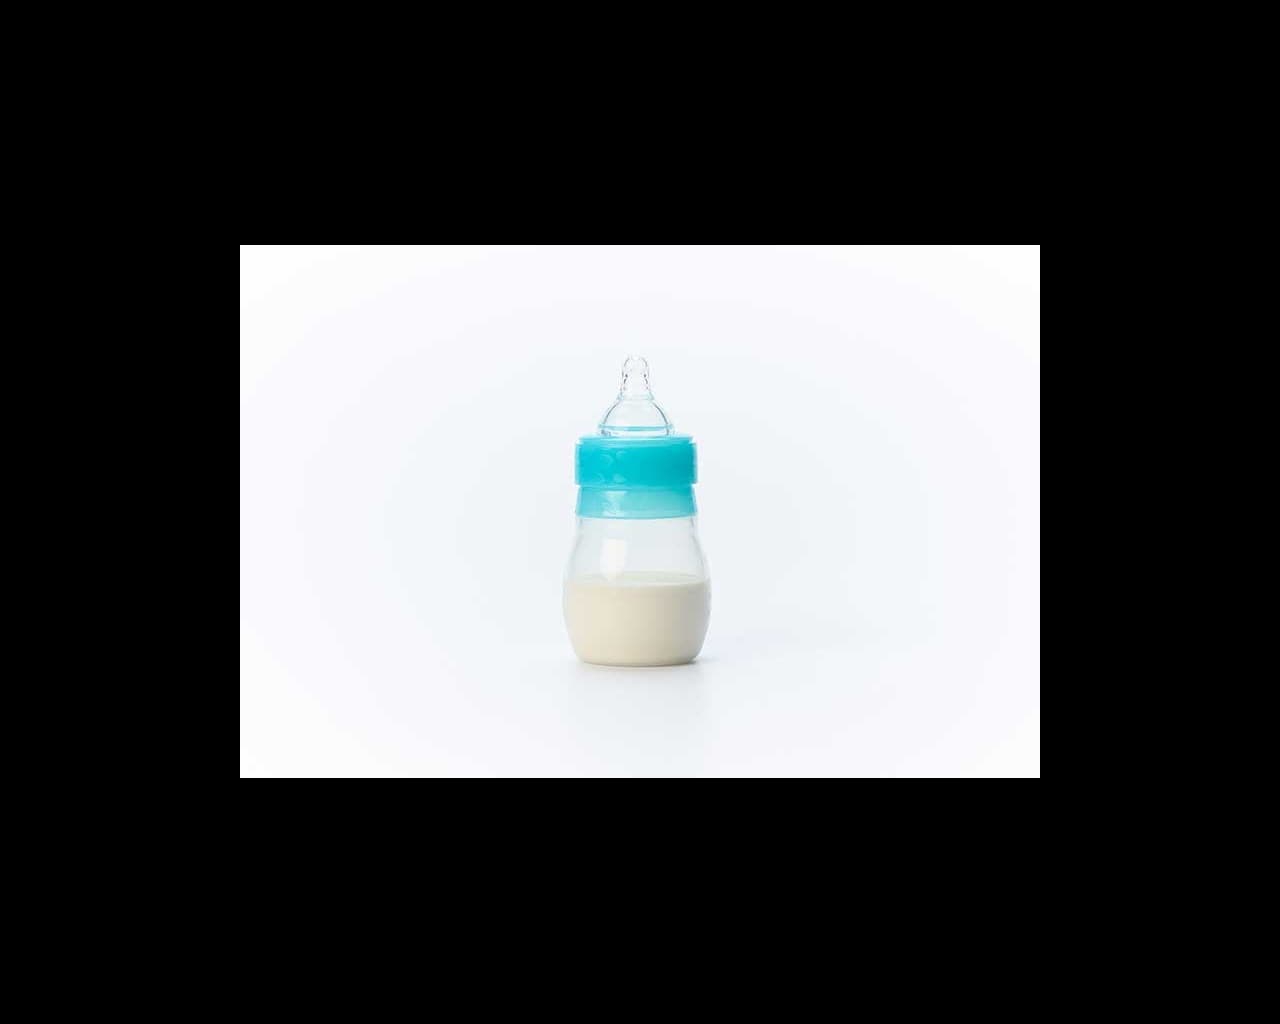 4 ounce bottle of breastmilk or forumula